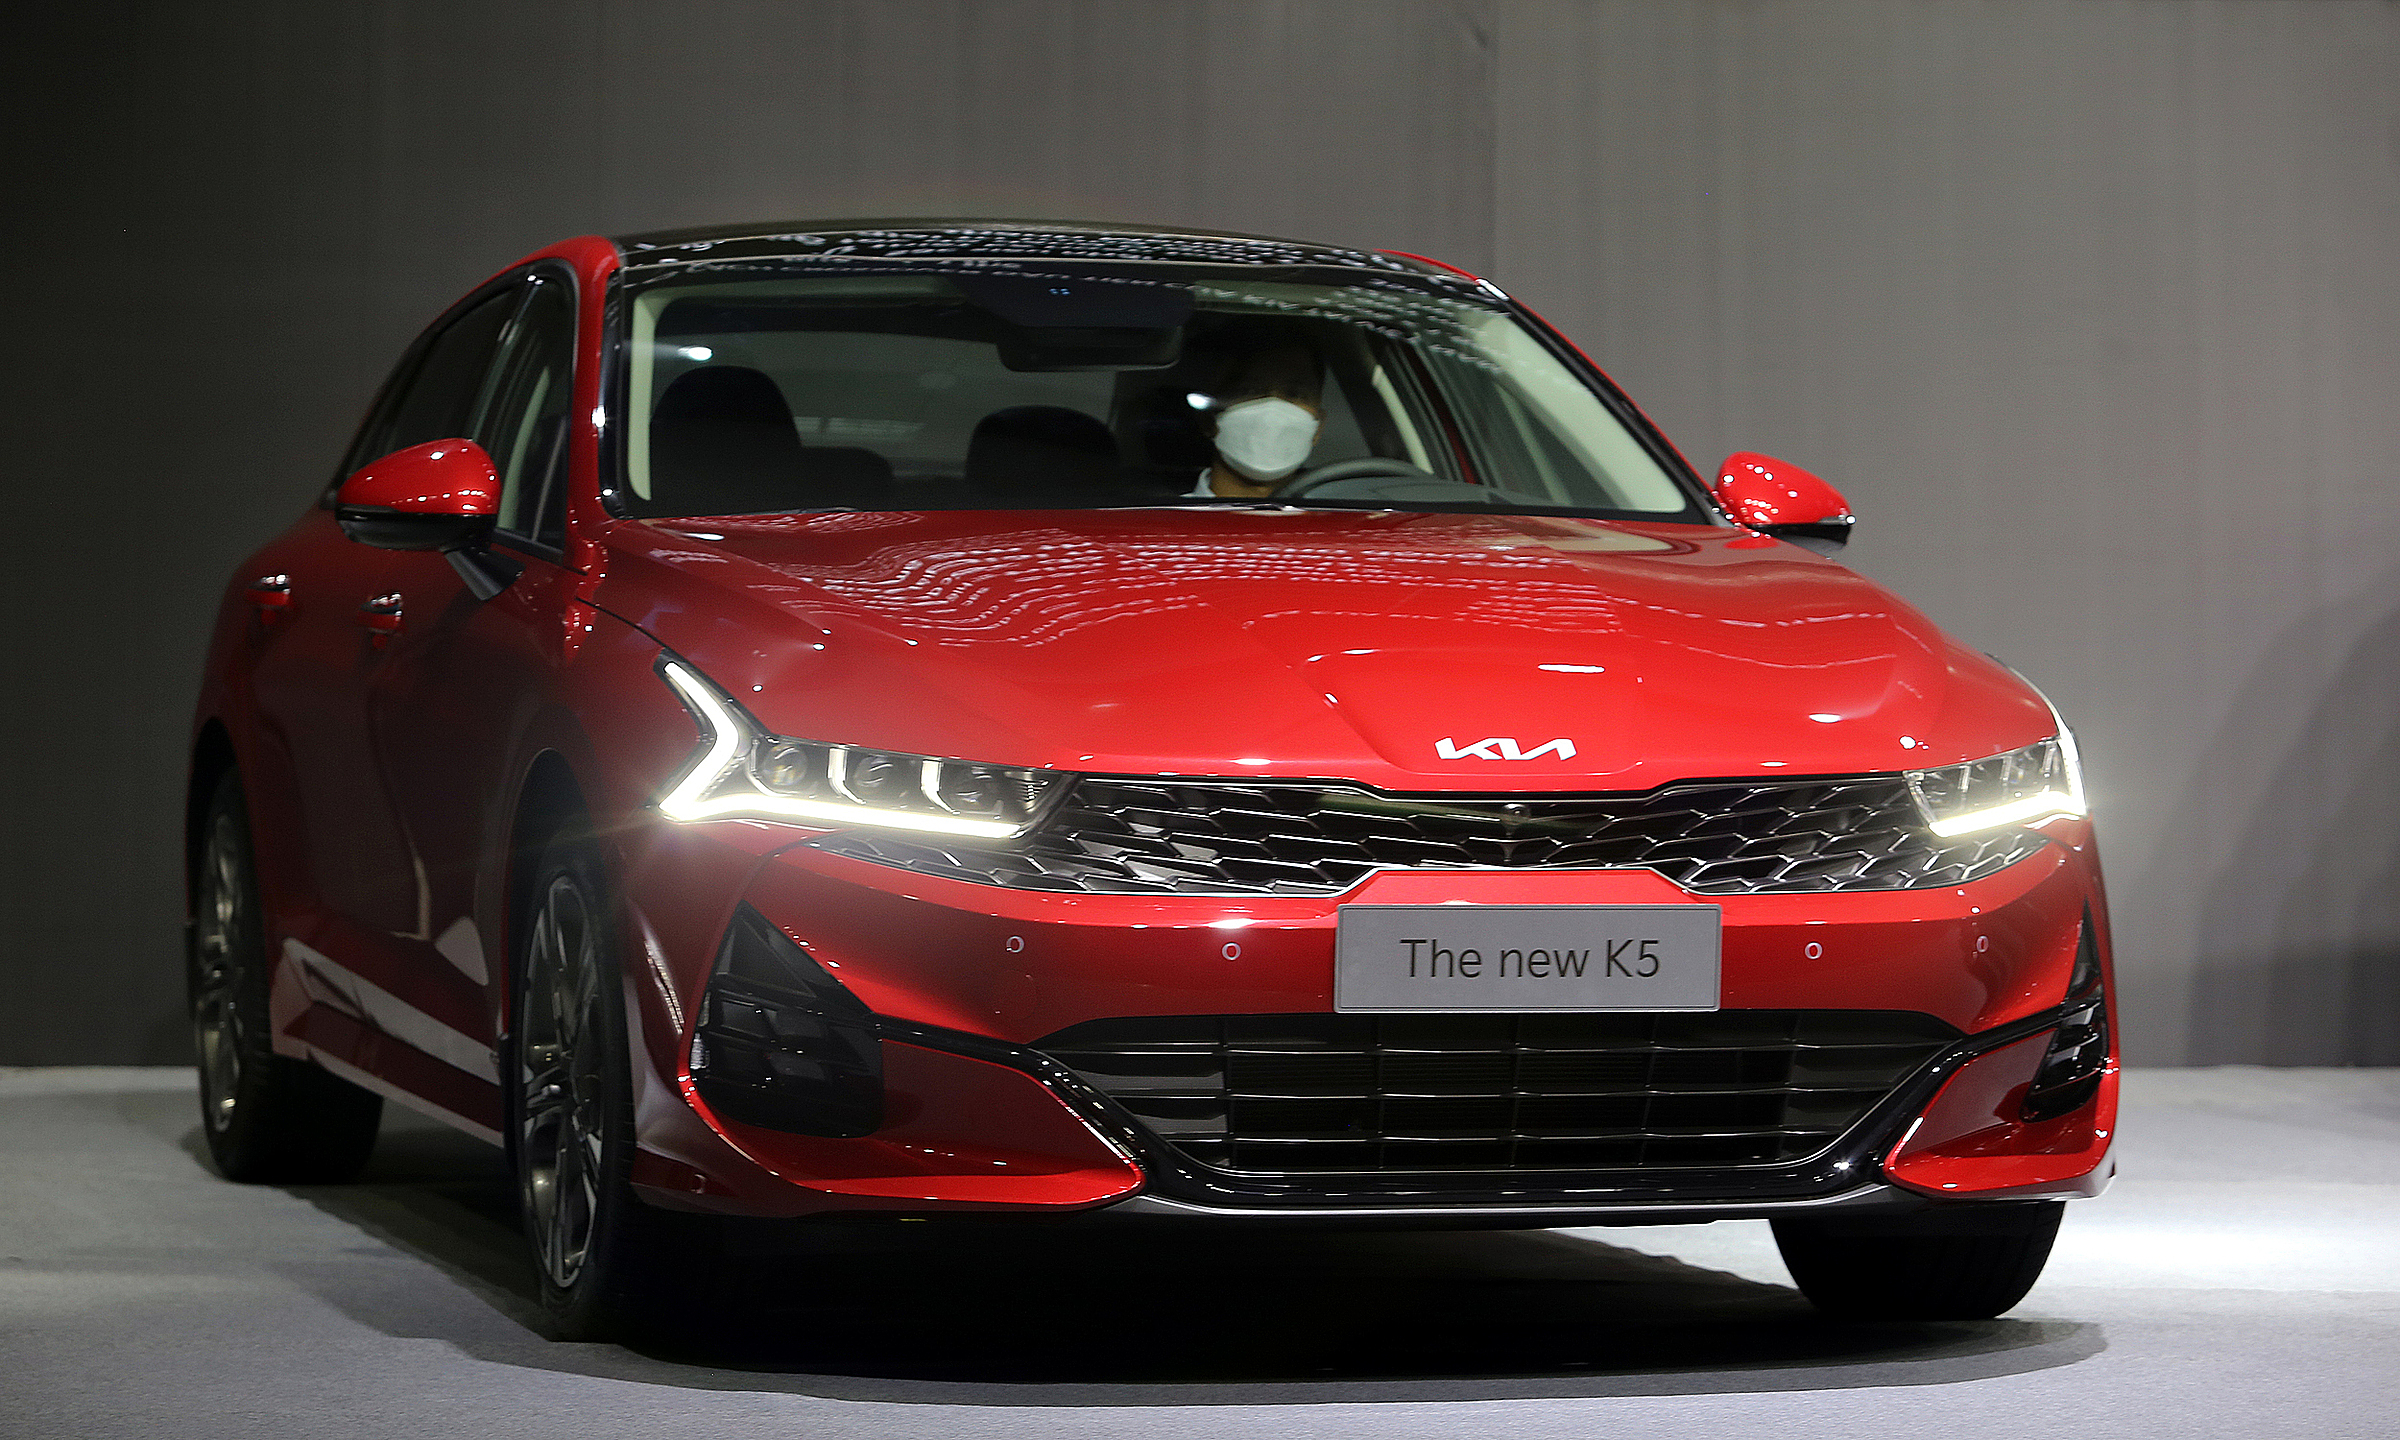 Phân khúc sedan cỡ D: Toyota Camry đứng đầu, Honda Accrord bất ngờ tăng doanh số